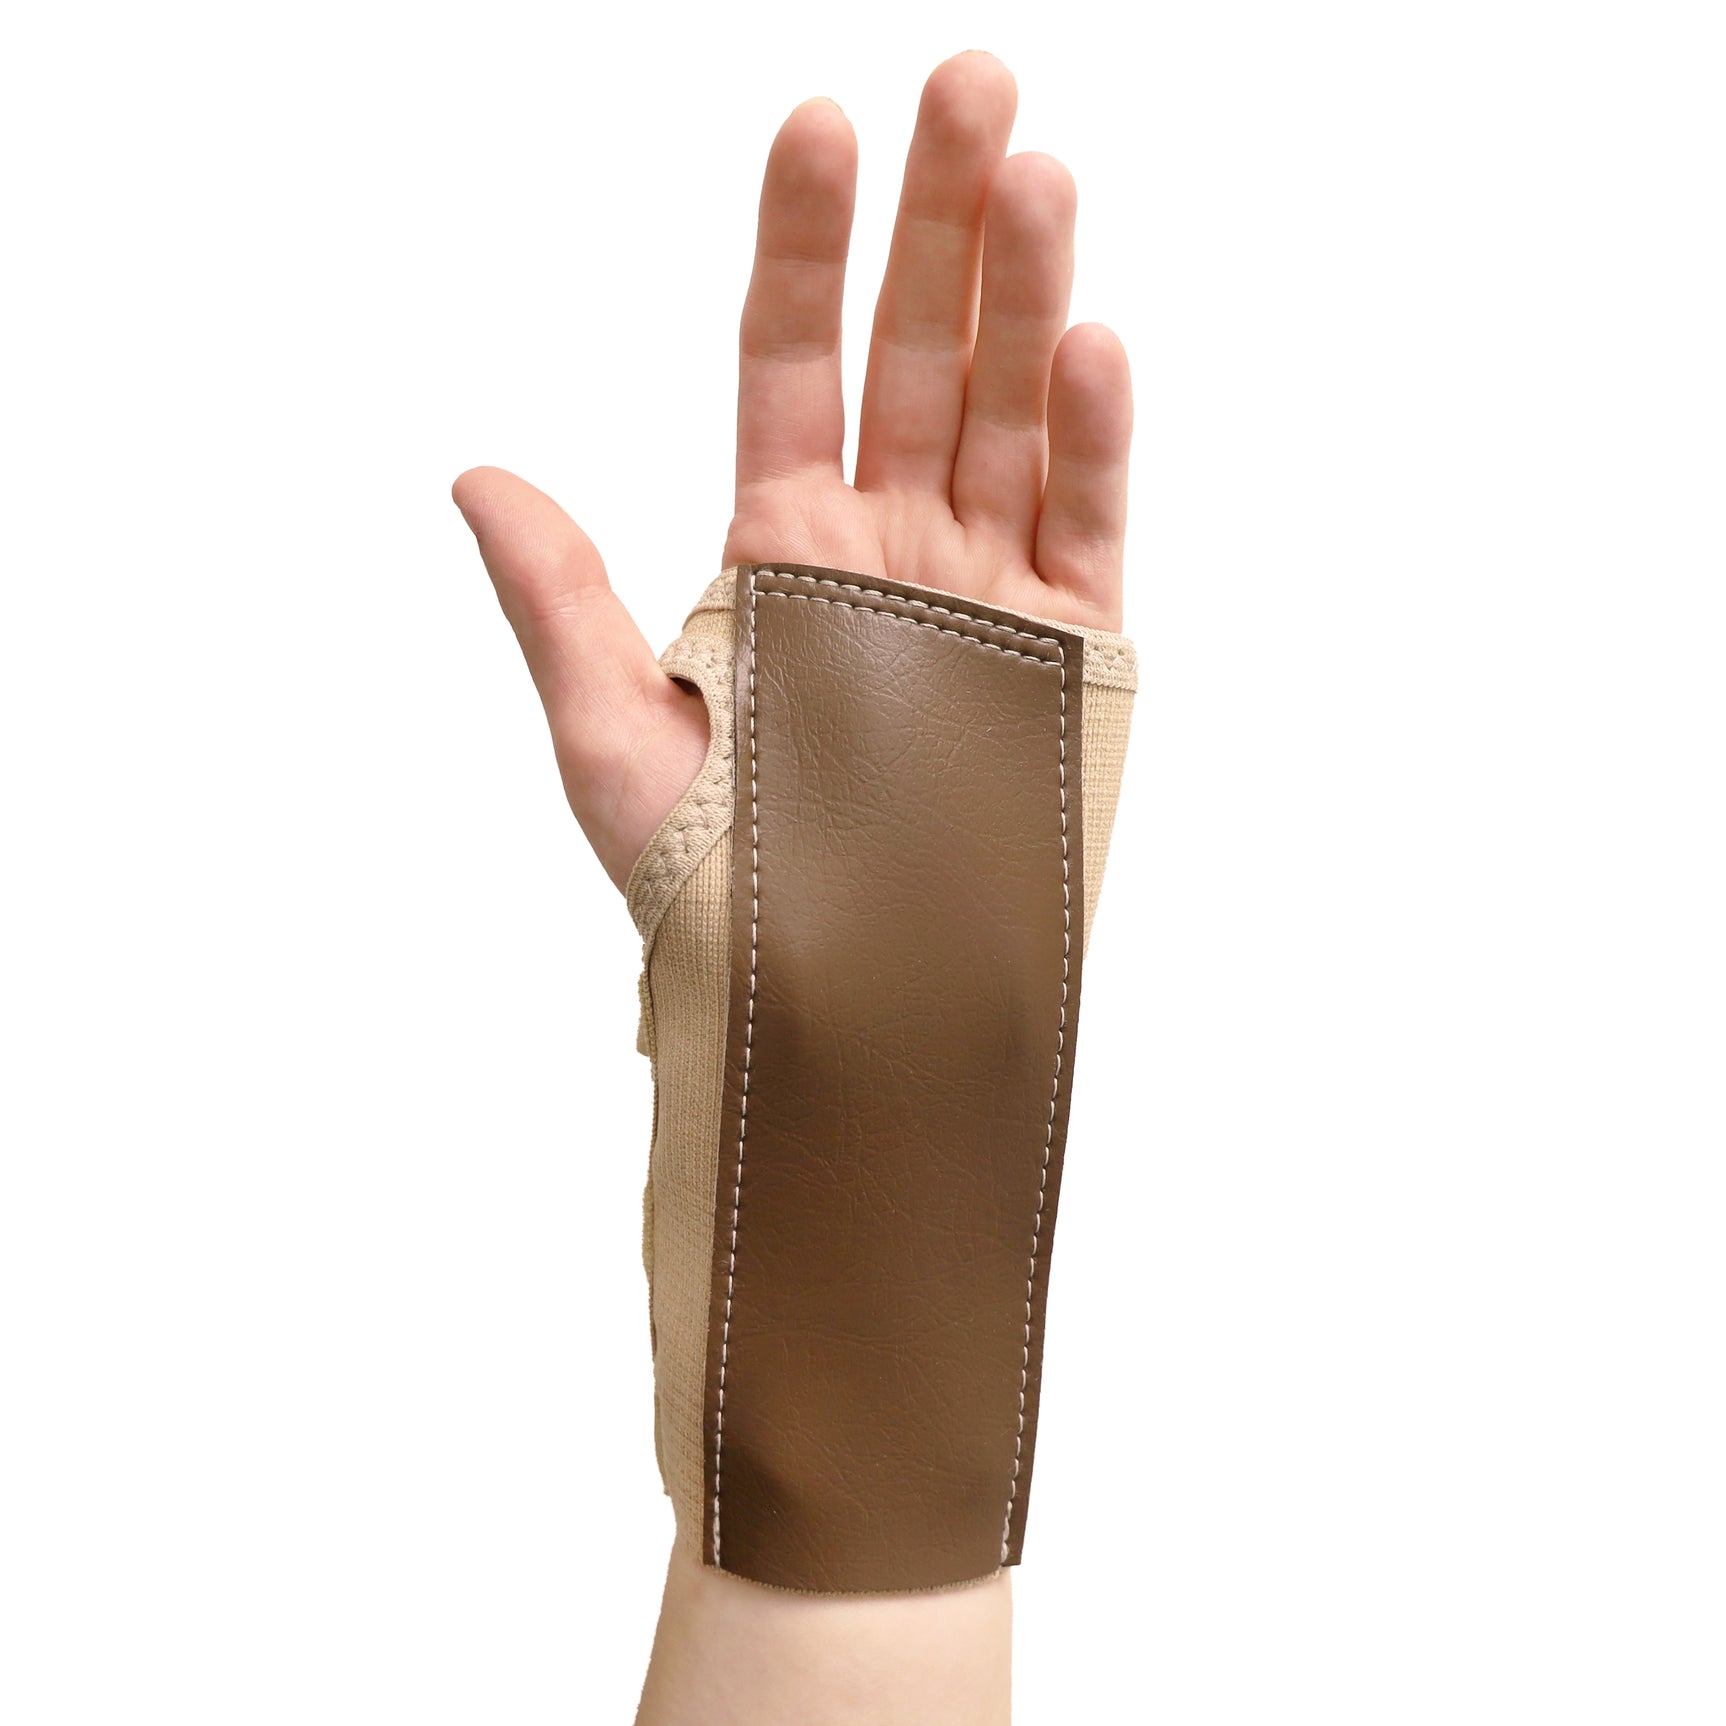 Scott Elastic Wrist Brace With Palm Stay